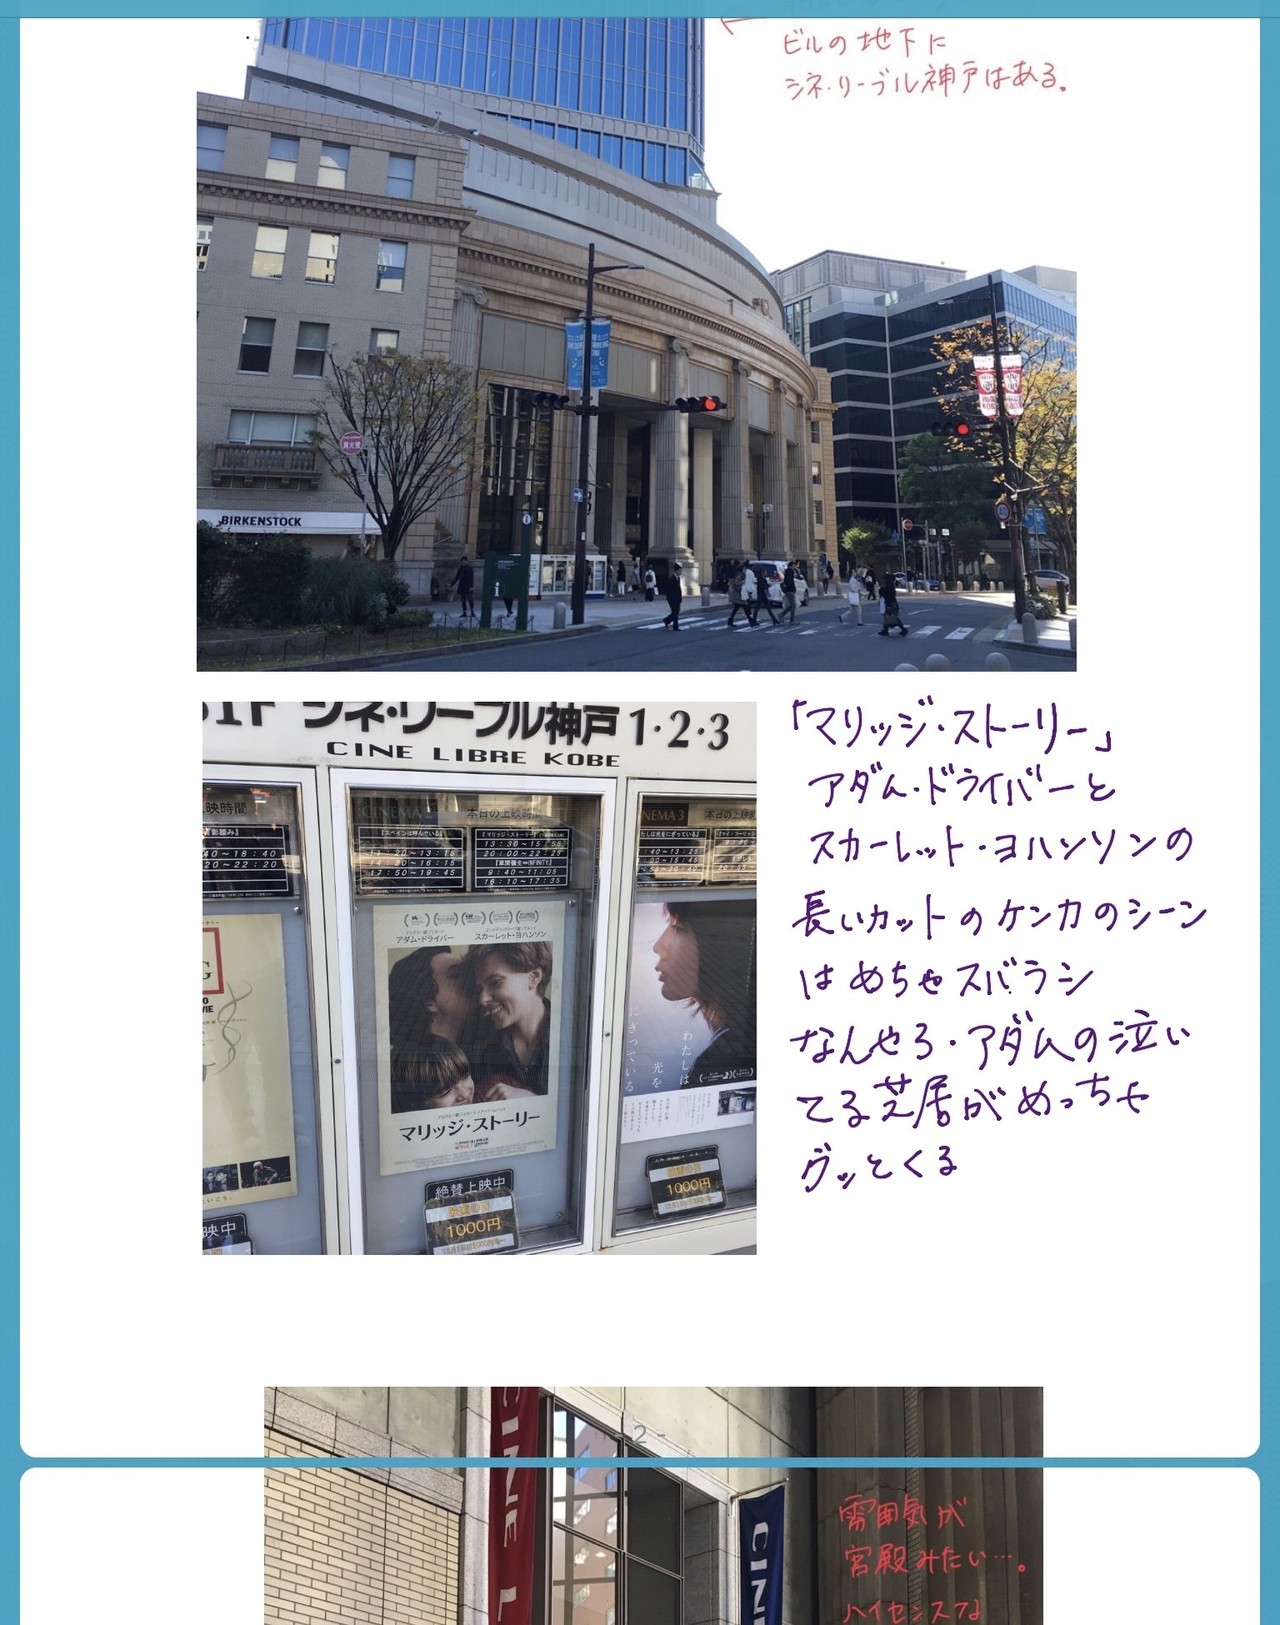 映画館遠征 Vol 2 神戸市 シネリーブル神戸 神戸国際松竹 元町映画館 ヤマウチケンジ Note